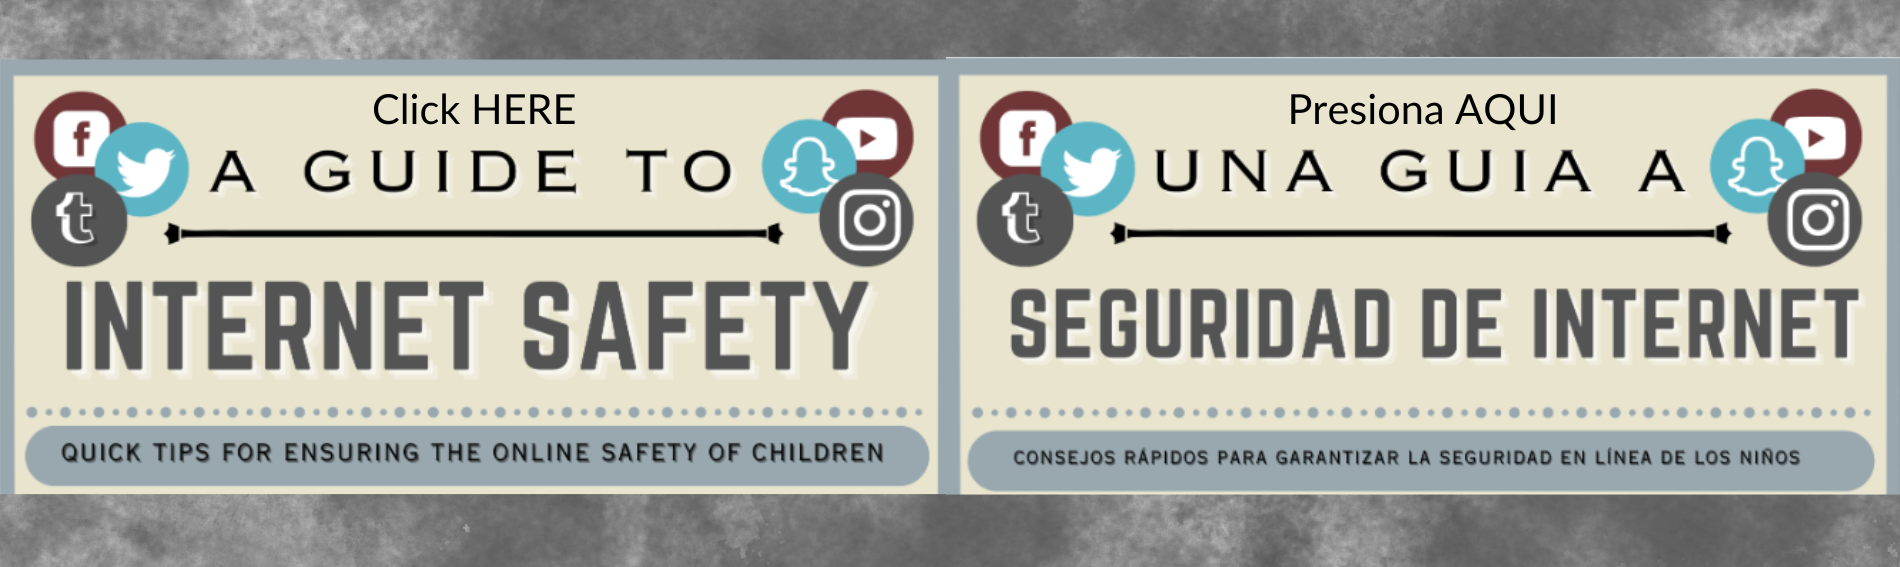 A Guide to Internet Safety; quick tips for ensuring the online safety of children; Una Guiz a Seguridad de internet; consejos rapidos para garanizar la seguridad en linea de los ninos 